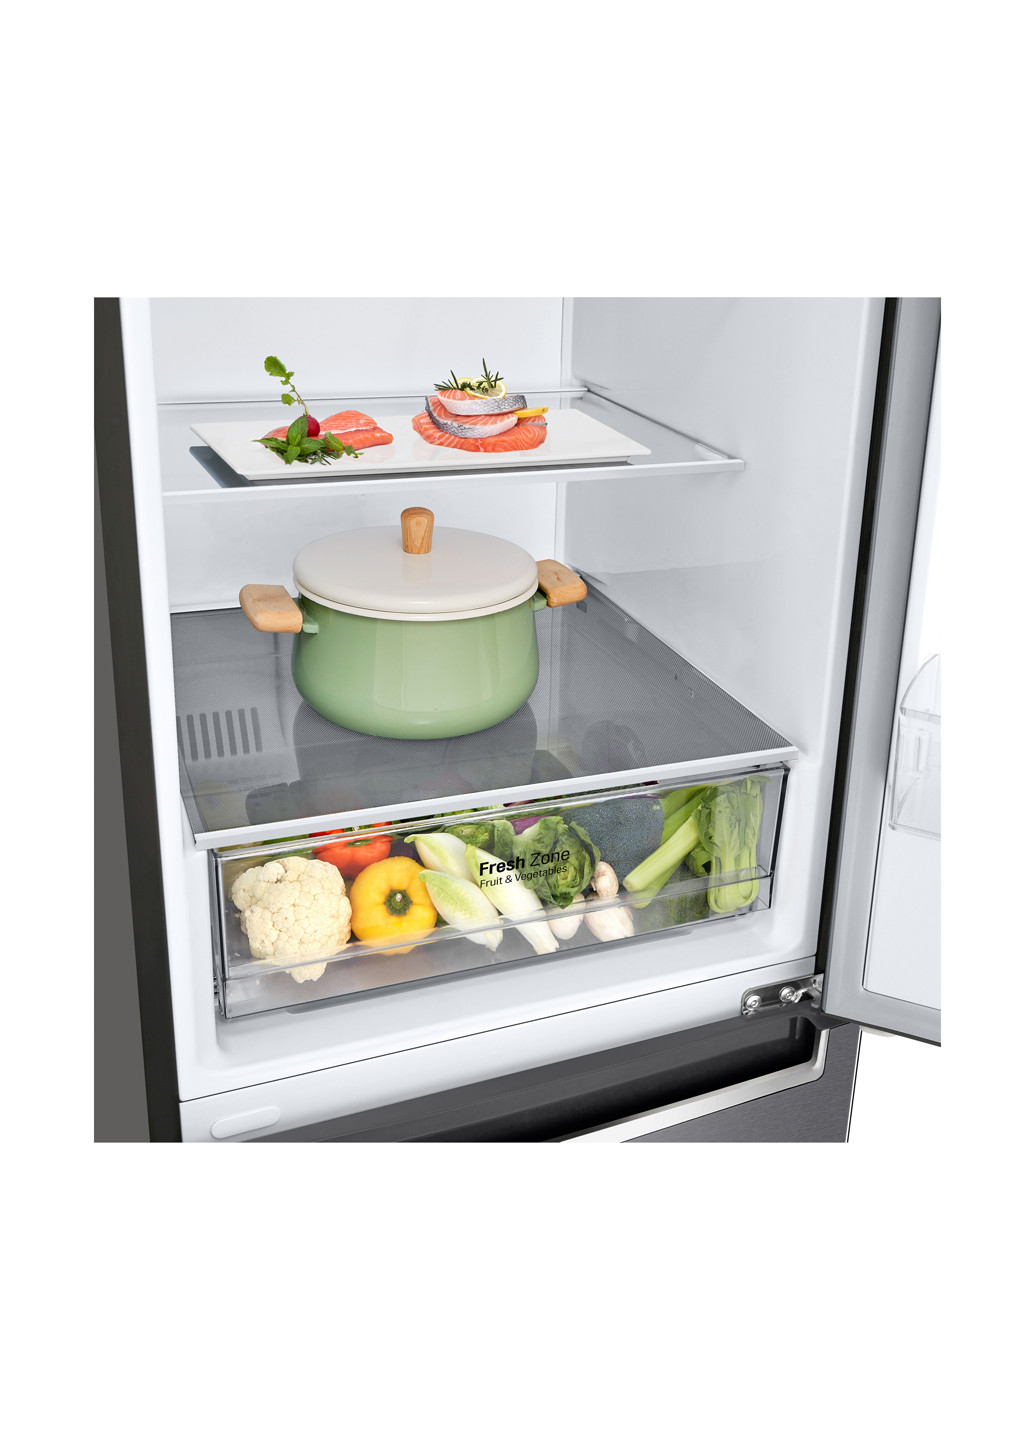 Холодильник комби LG GA-B509SLKM